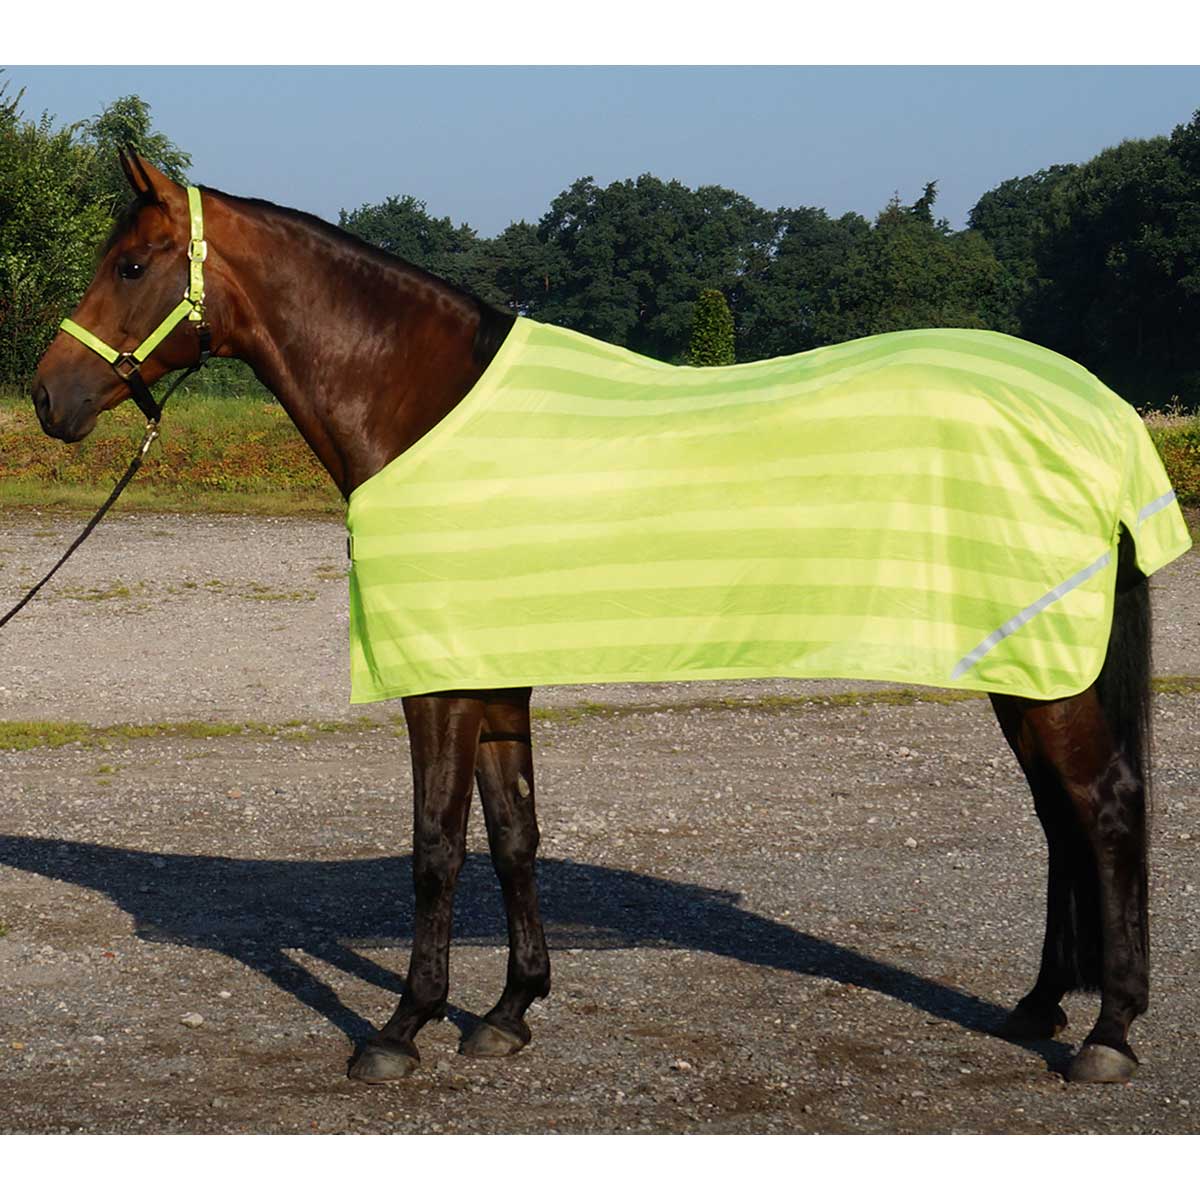 BUSSE REFLECTION pătură reflectorizantă pentru cai 